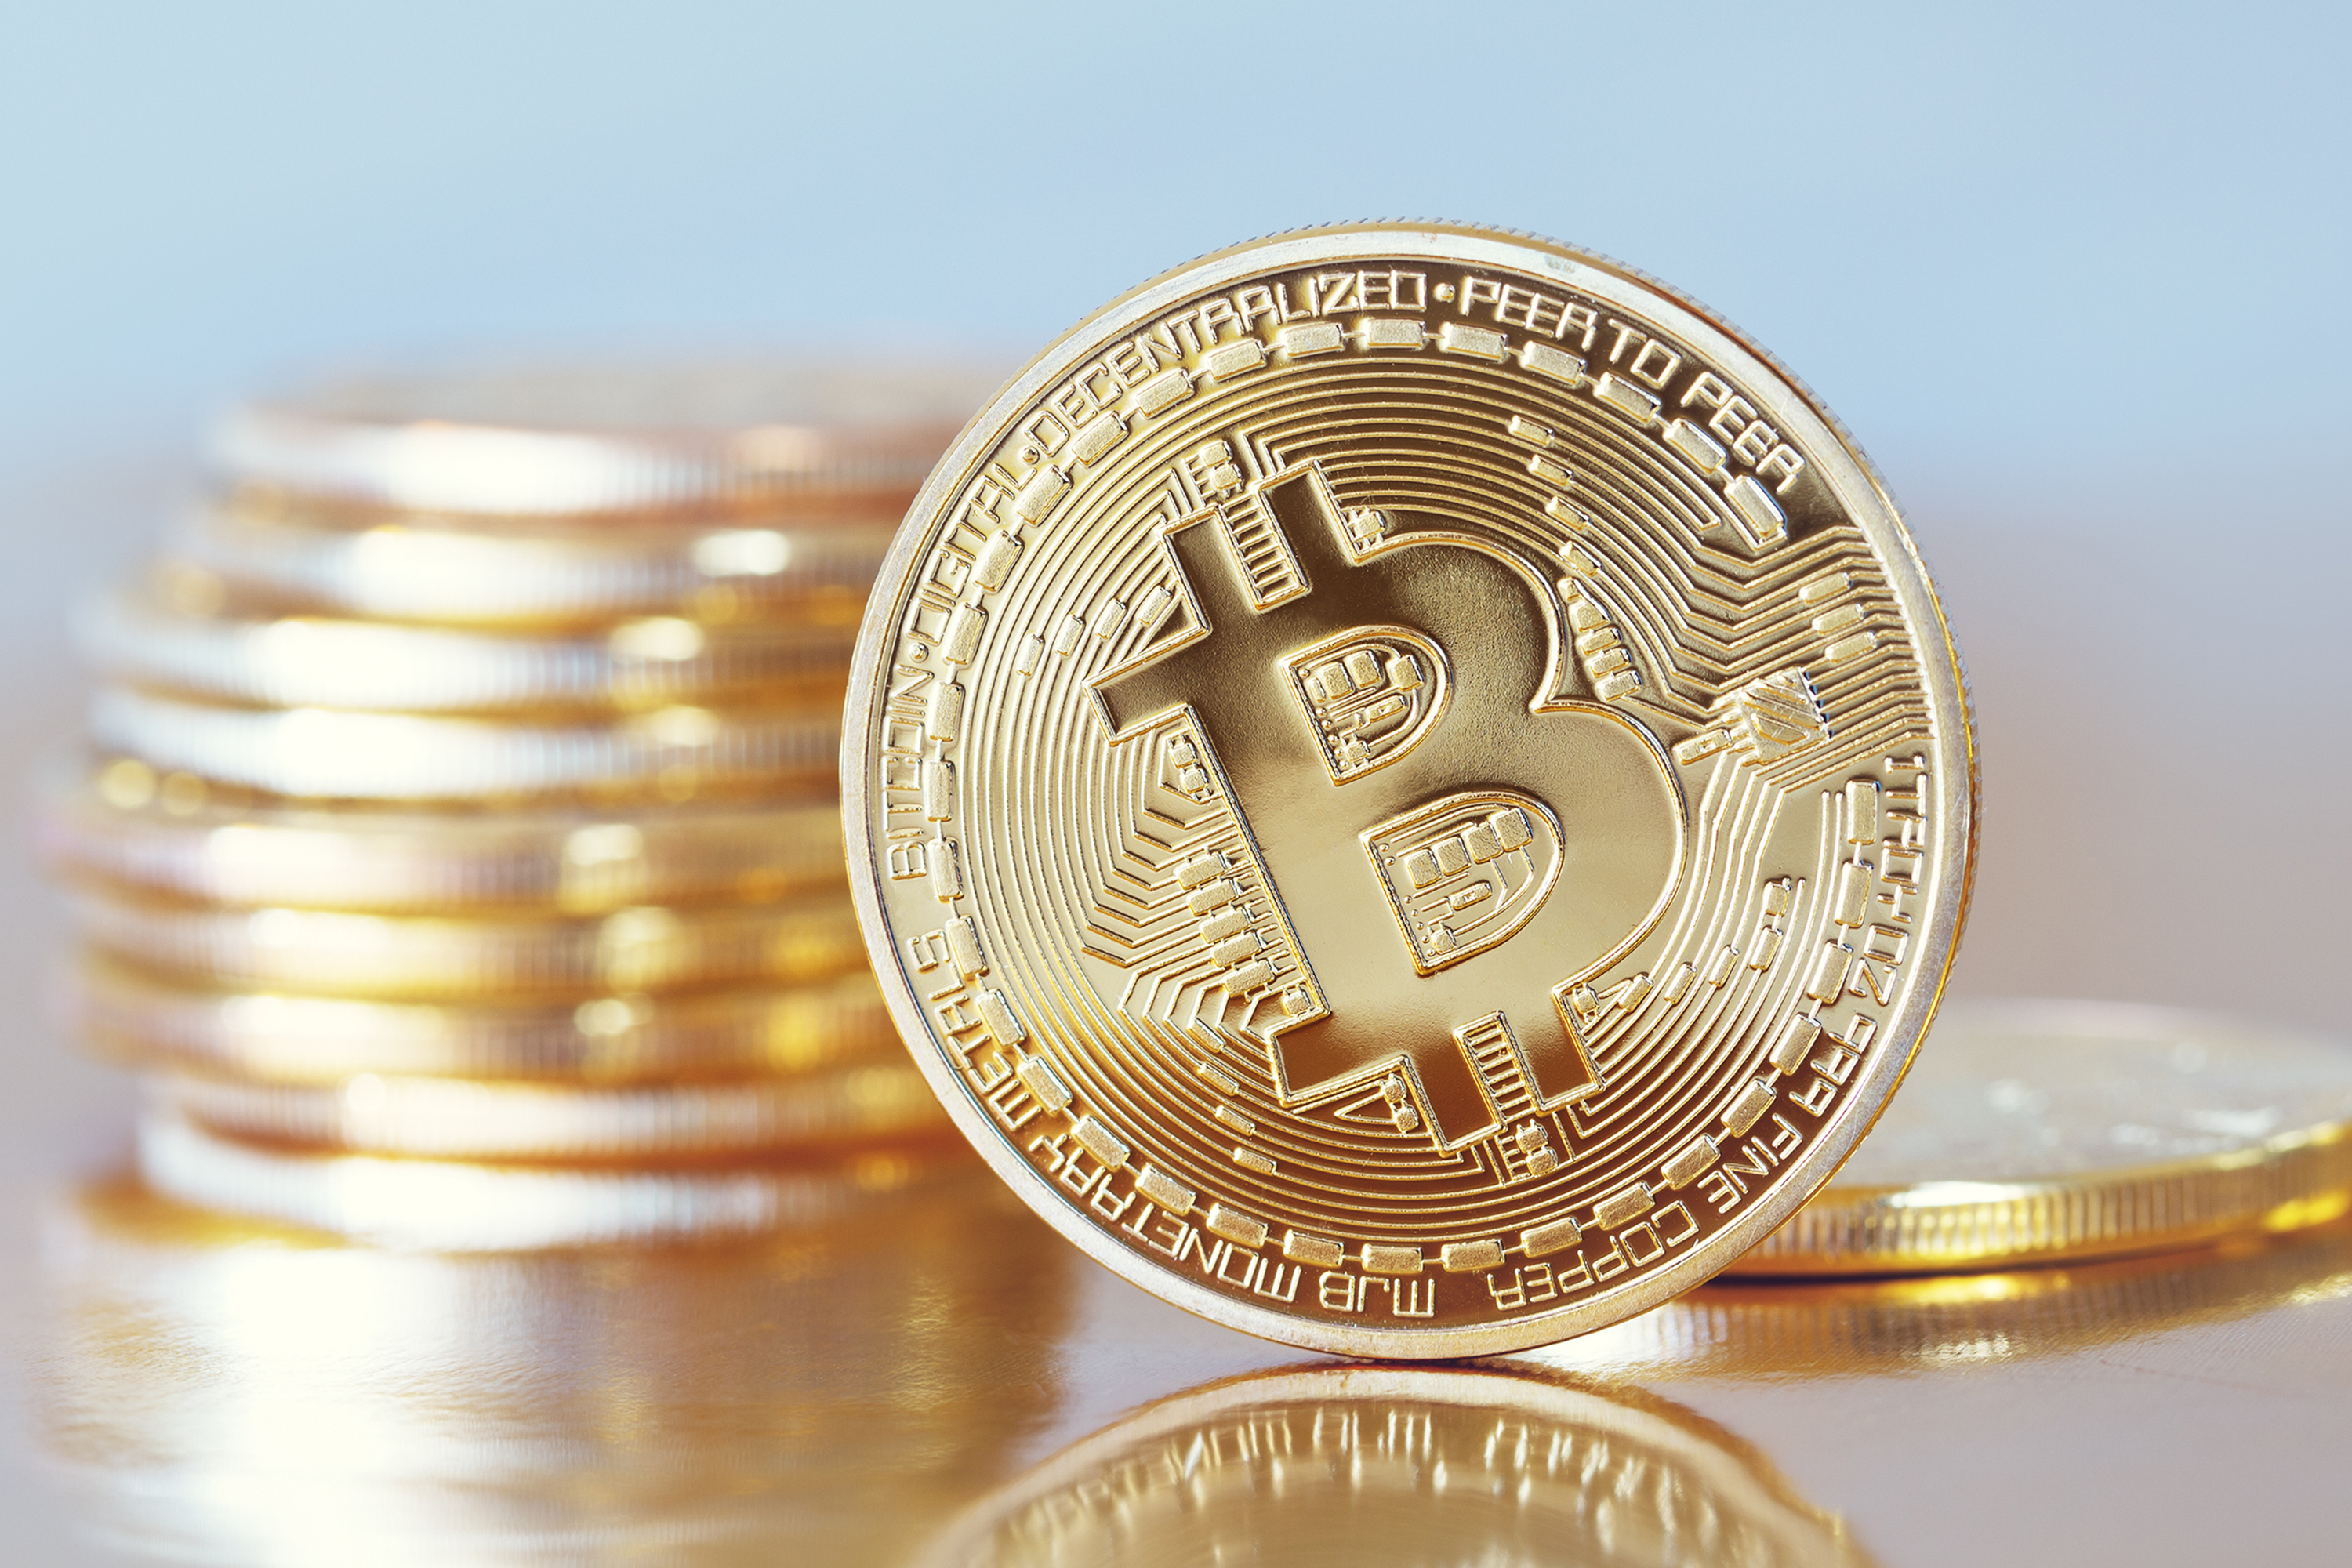 goldmansachs negociará em bitcoin você pode negociar moeda criptografada com dinheiro real